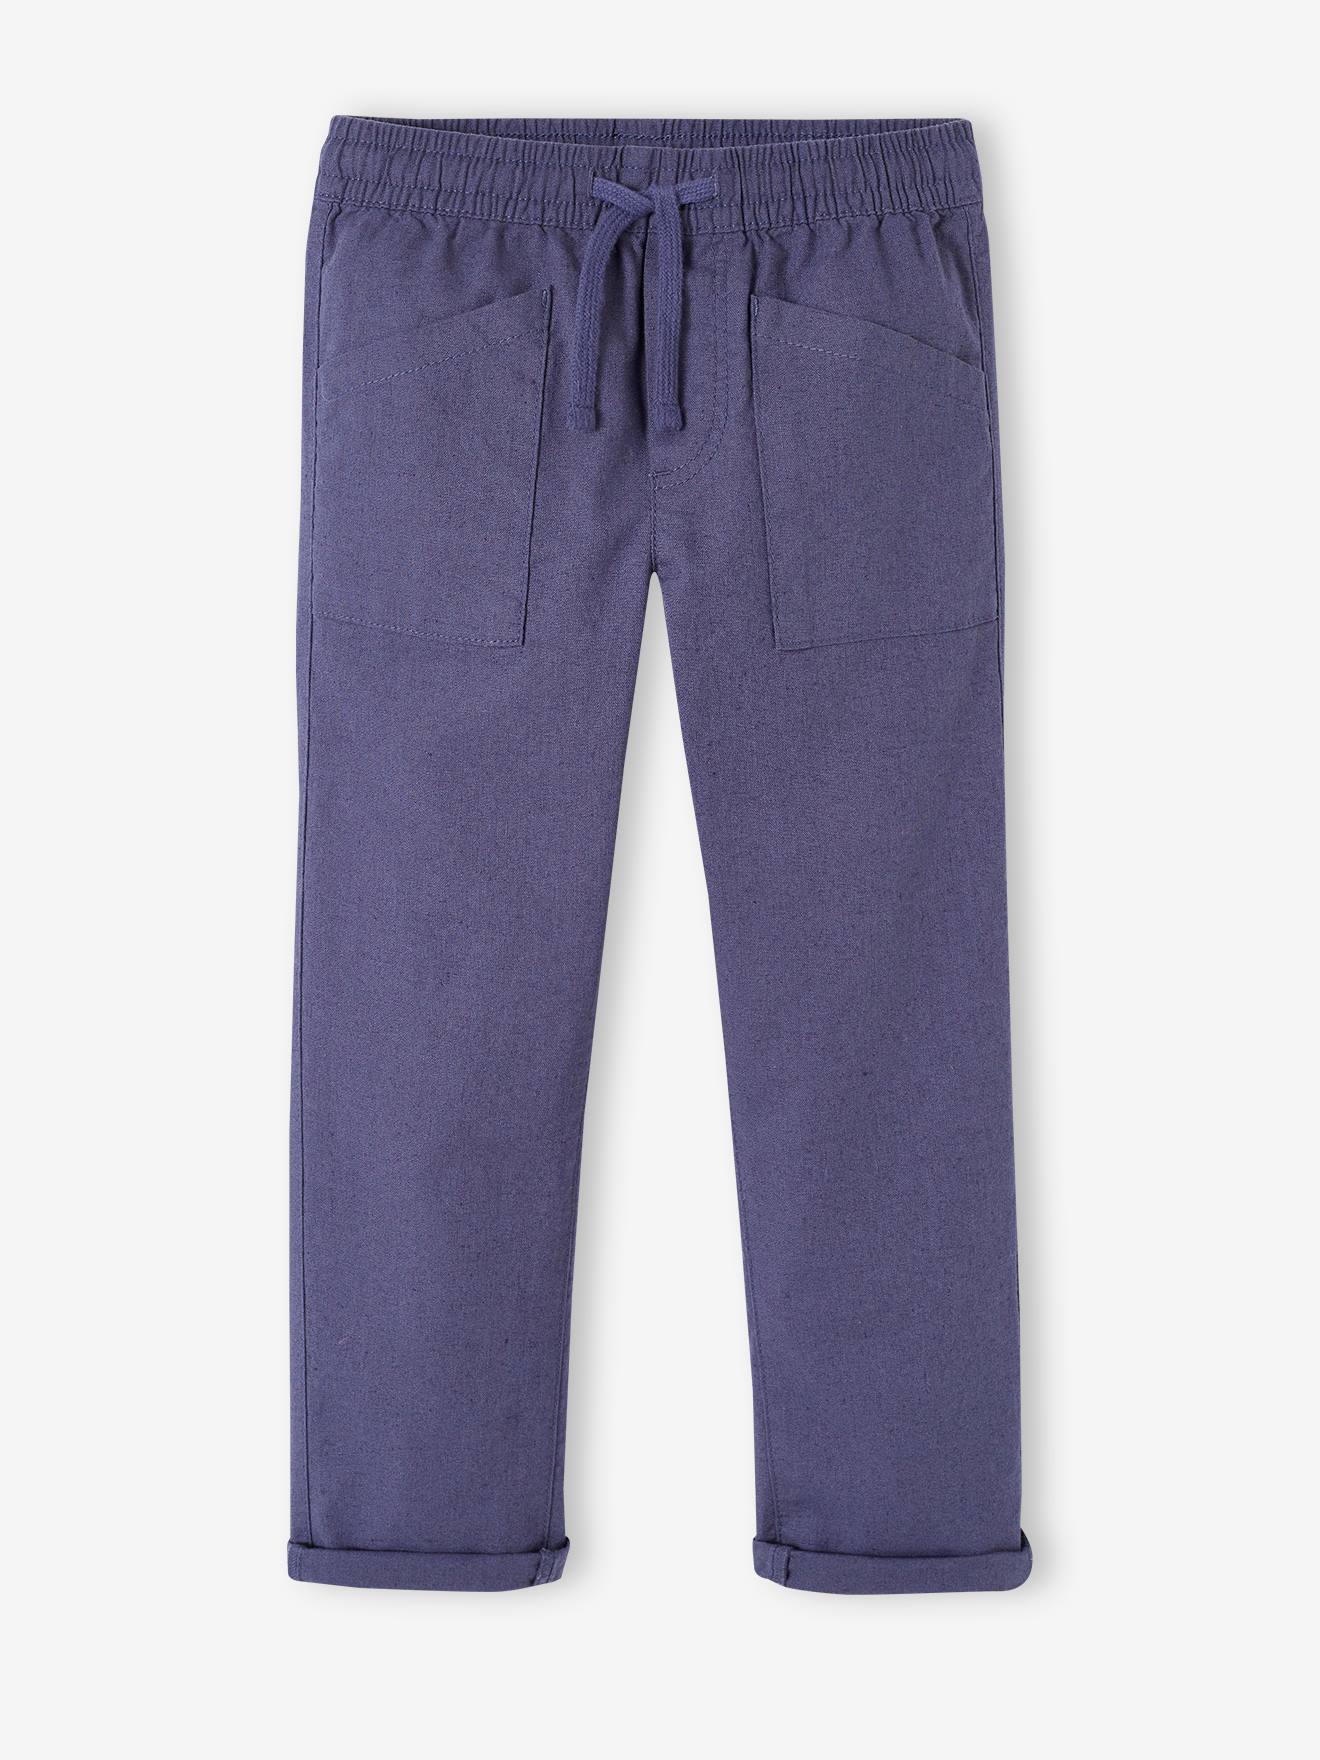 VERTBAUDET Pantalón ancho estilo carpintero de algodón y lino, fácil de vestir, para niño azul pizarra